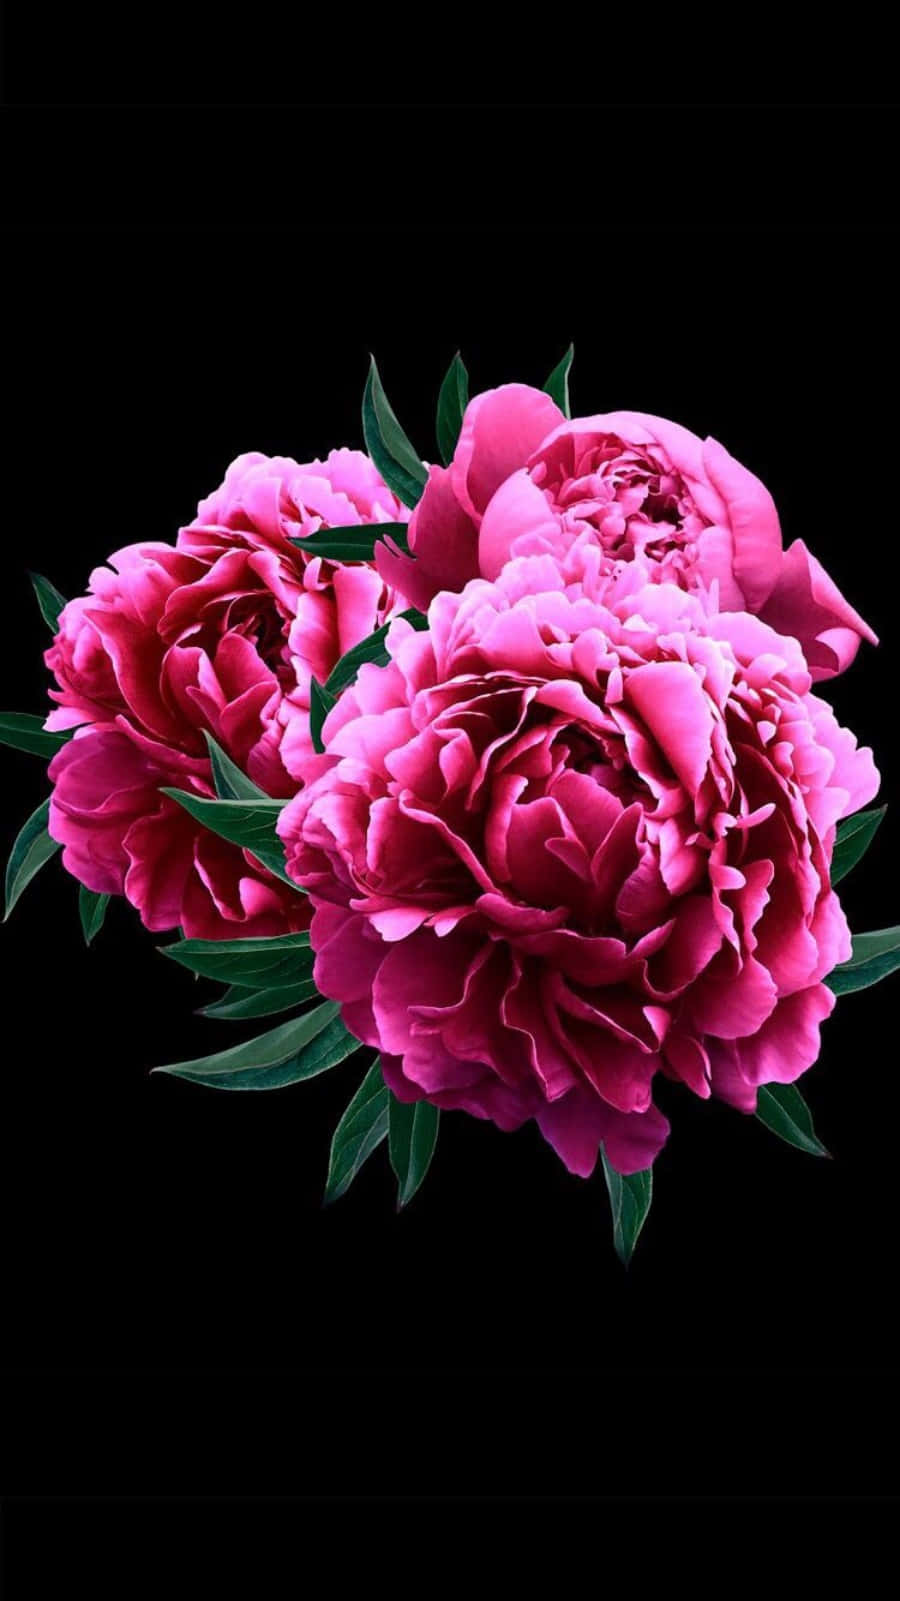 Njutav Den Fantastiska Blomningen Av Rosa Pionblommor Med De Livliga Färgerna På Din Iphone. Wallpaper